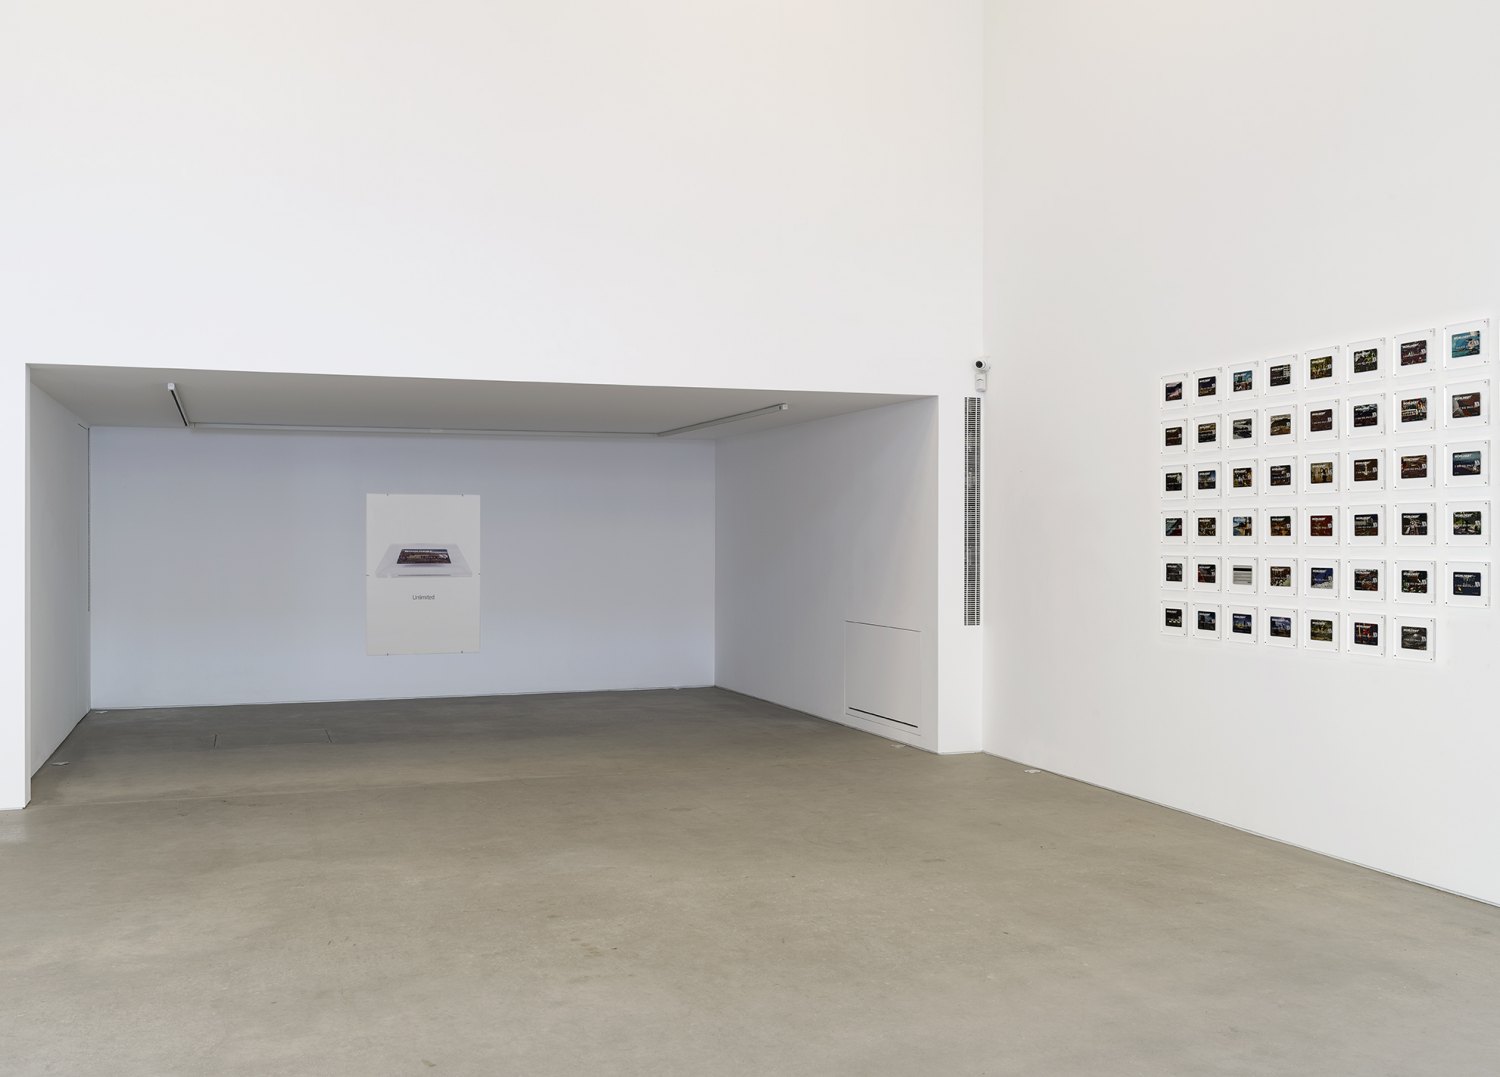 Installation view, John Knight, Worldebt, Galerie Neu at The Intermission, Piraeus, 2019